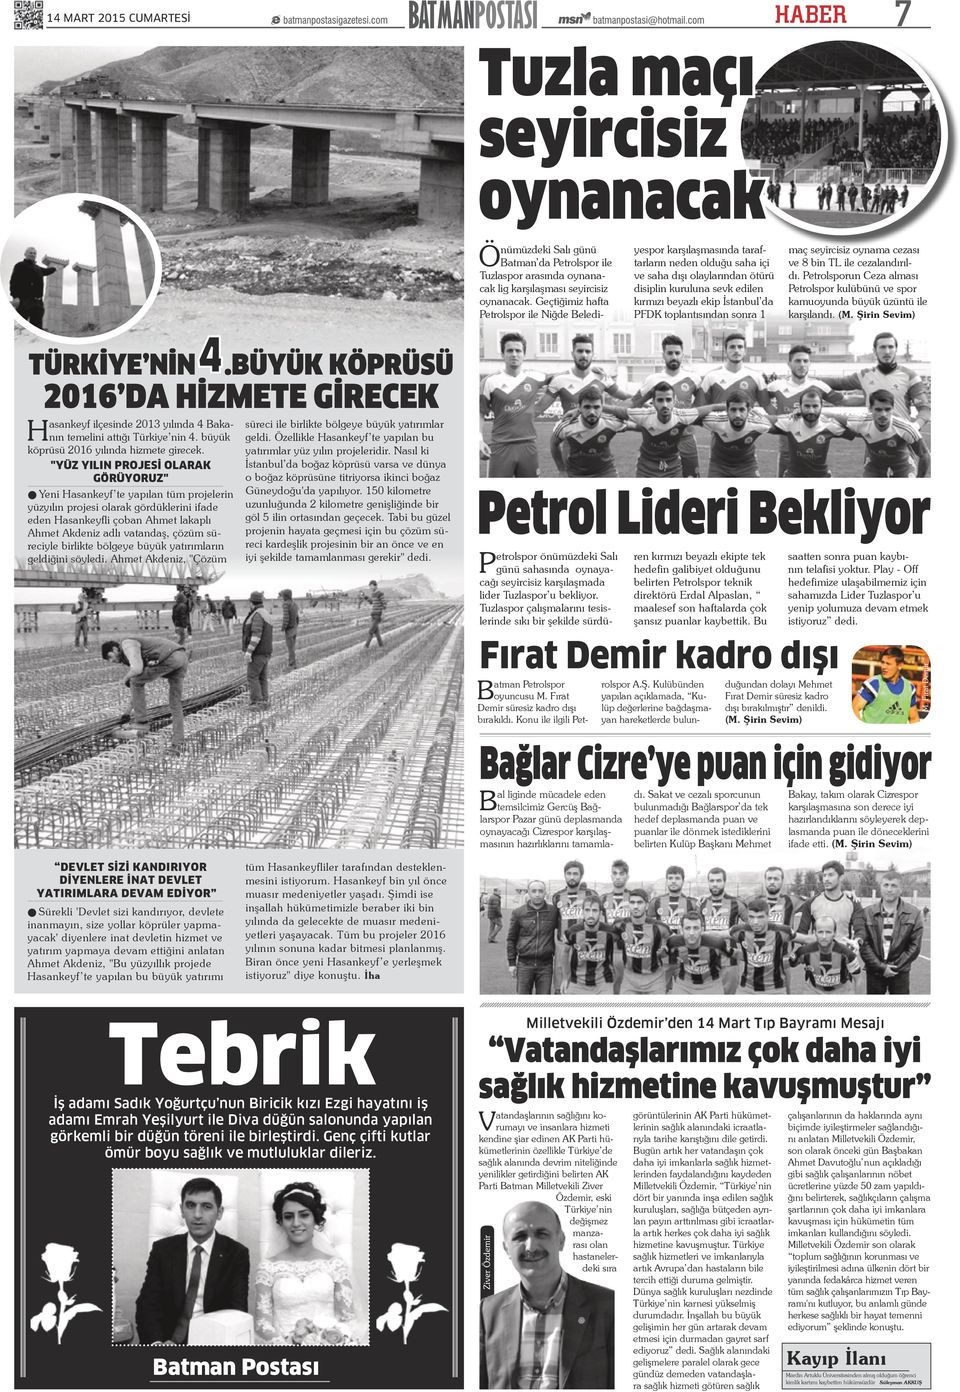 PFDK toplantısından sonra 1 maç seyircisiz oynama cezası ve 8 bin TL ile cezalandırıldı. Petrolsporun Ceza alması Petrolspor kulübünü ve spor kamuoyunda büyük üzüntü ile karşılandı. (M.